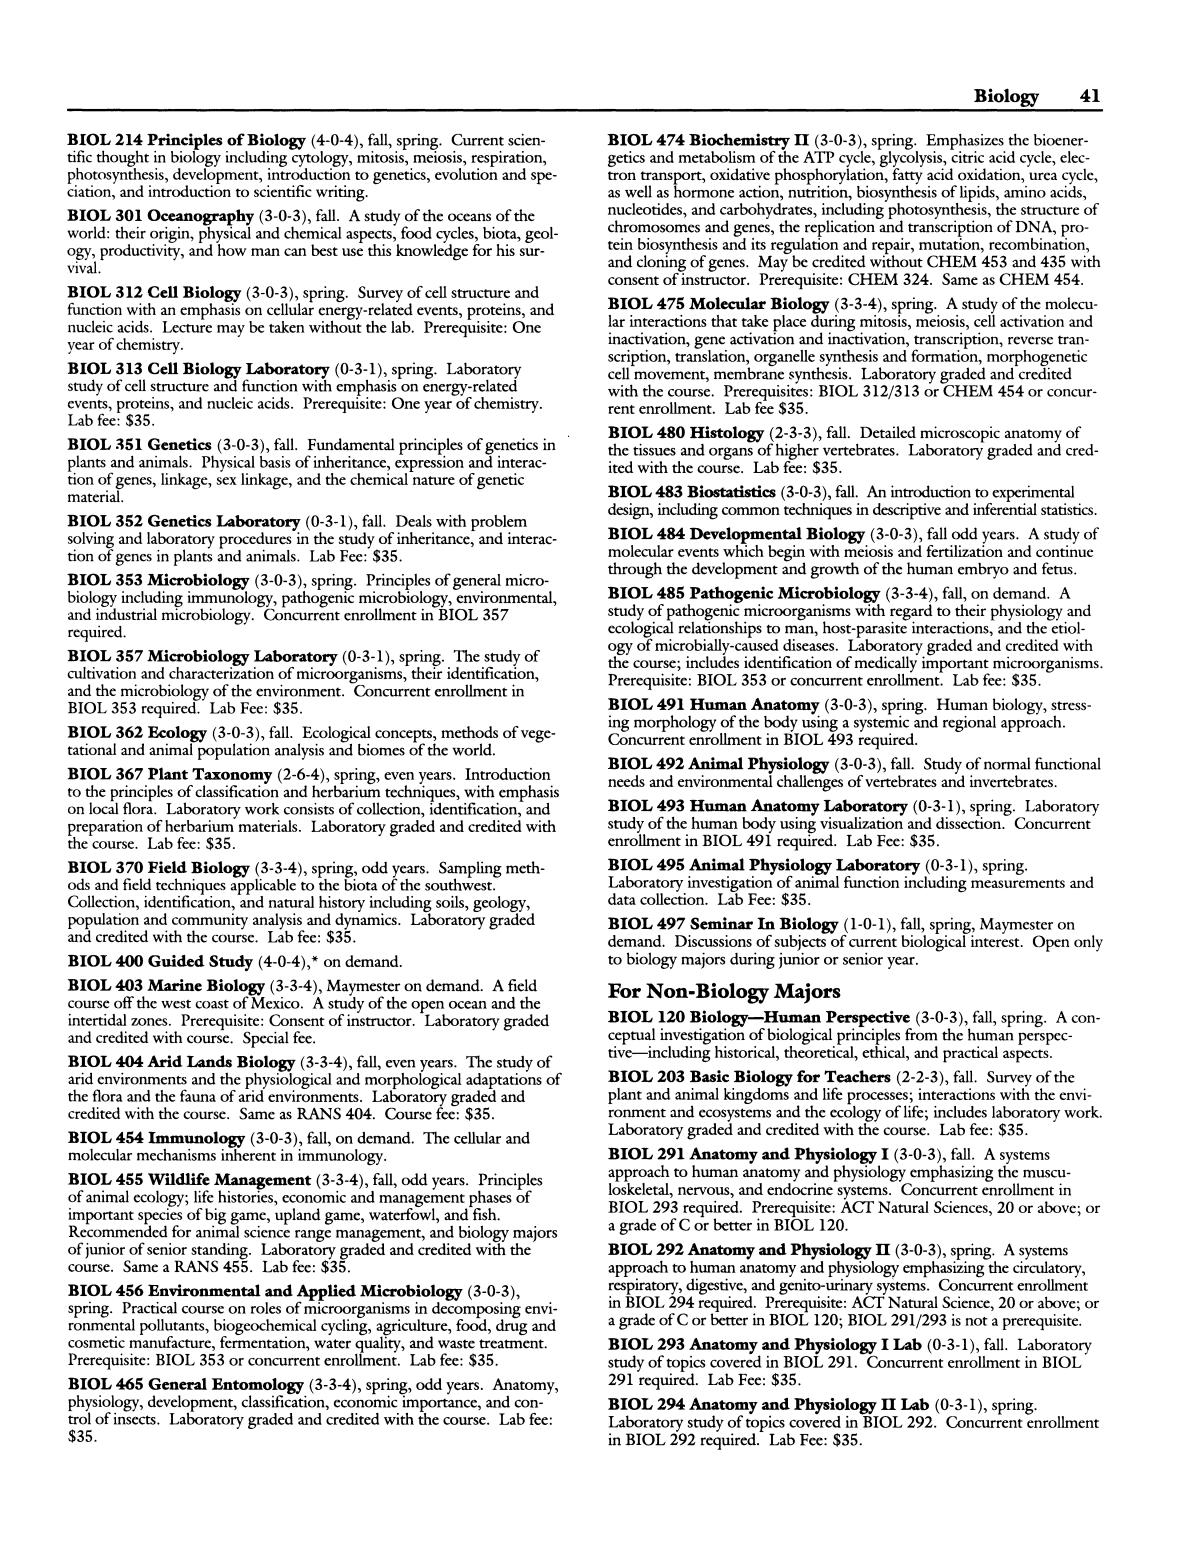 Catalog of Abilene Christian University, 1994-1995
                                                
                                                    41
                                                